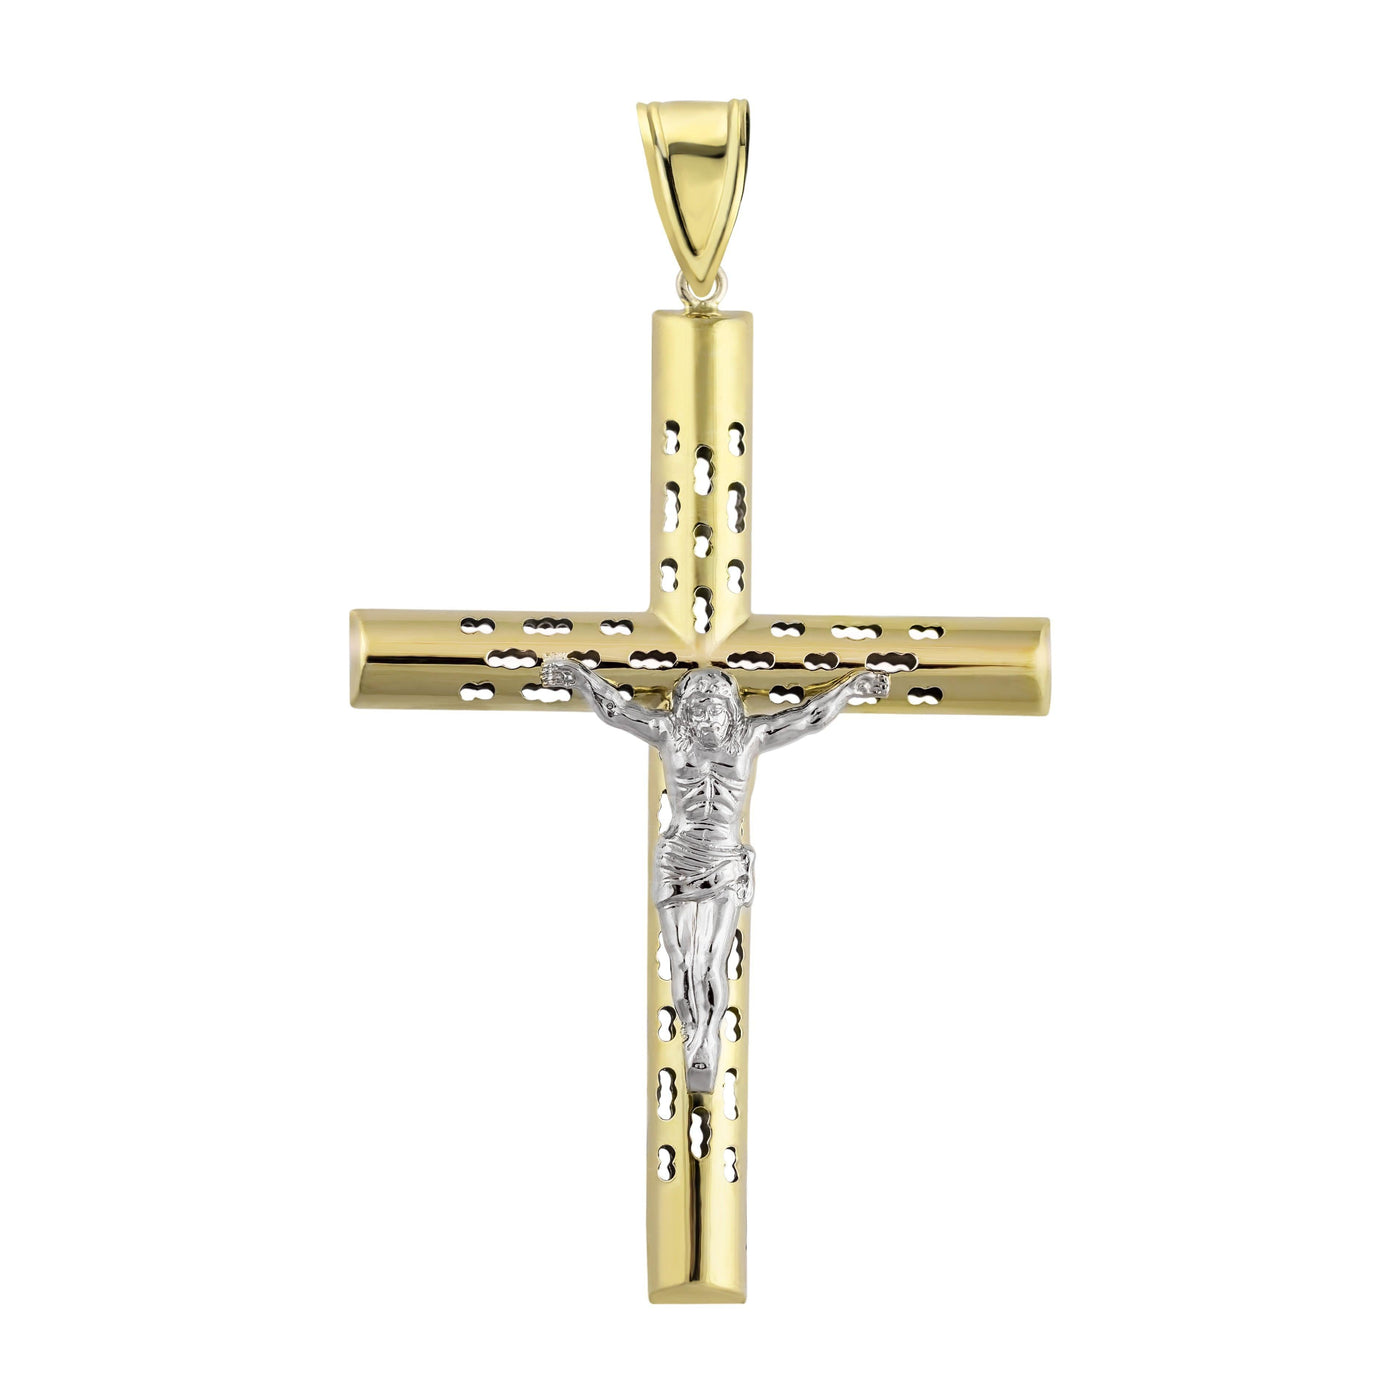 3.25" Huge Jesus Christ Crucifix Cross Pendant Charm 10K Yellow Gold - bayamjewelry